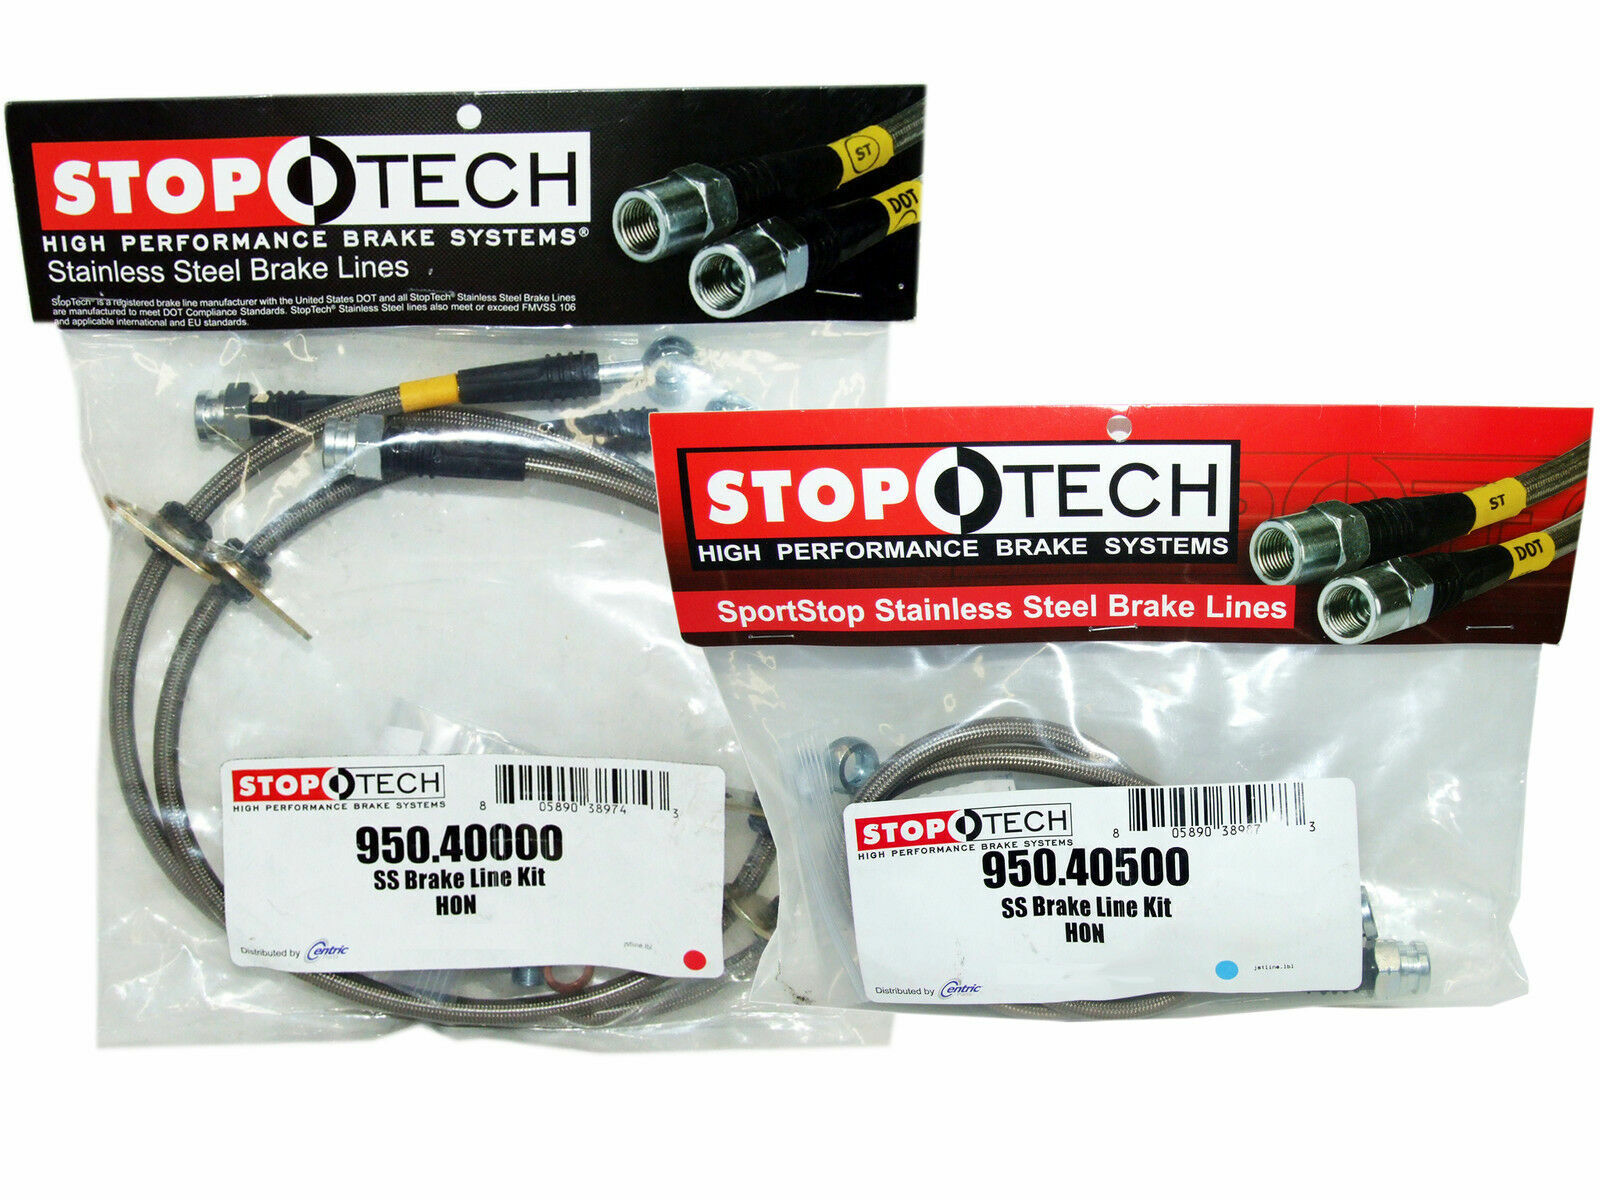 StopTech Stainless Steel Brake Line Kit F&R for 92-95 Civic EG 94-01 Integra DC